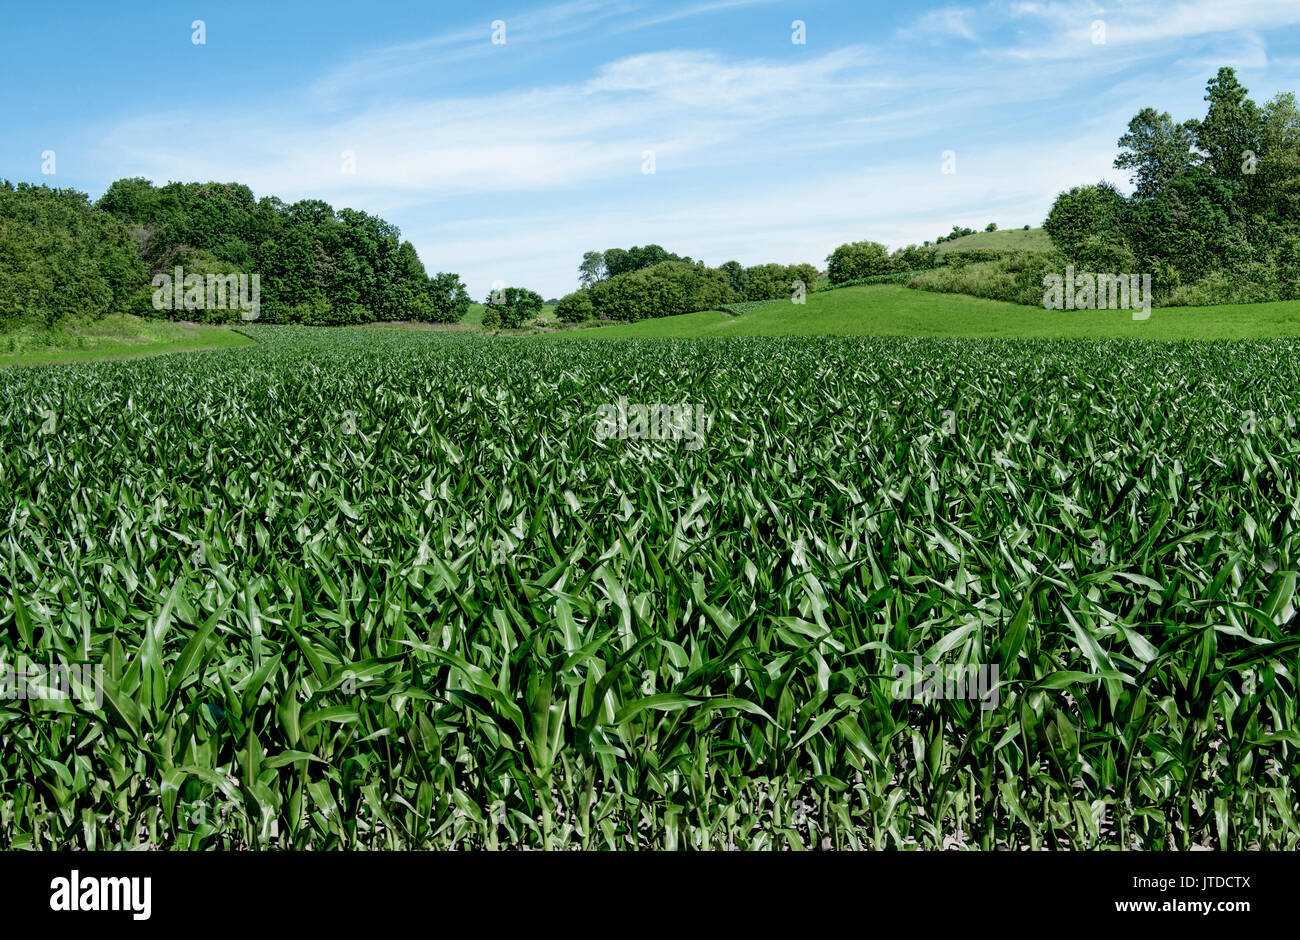 Maisfelder am 4. Juli: Maisstängel erreichen eine Höhe von 3-4 Fuß Anfang Juli auf einem kleinen Bauernhof im Süden von Wisconsin. Stockfoto